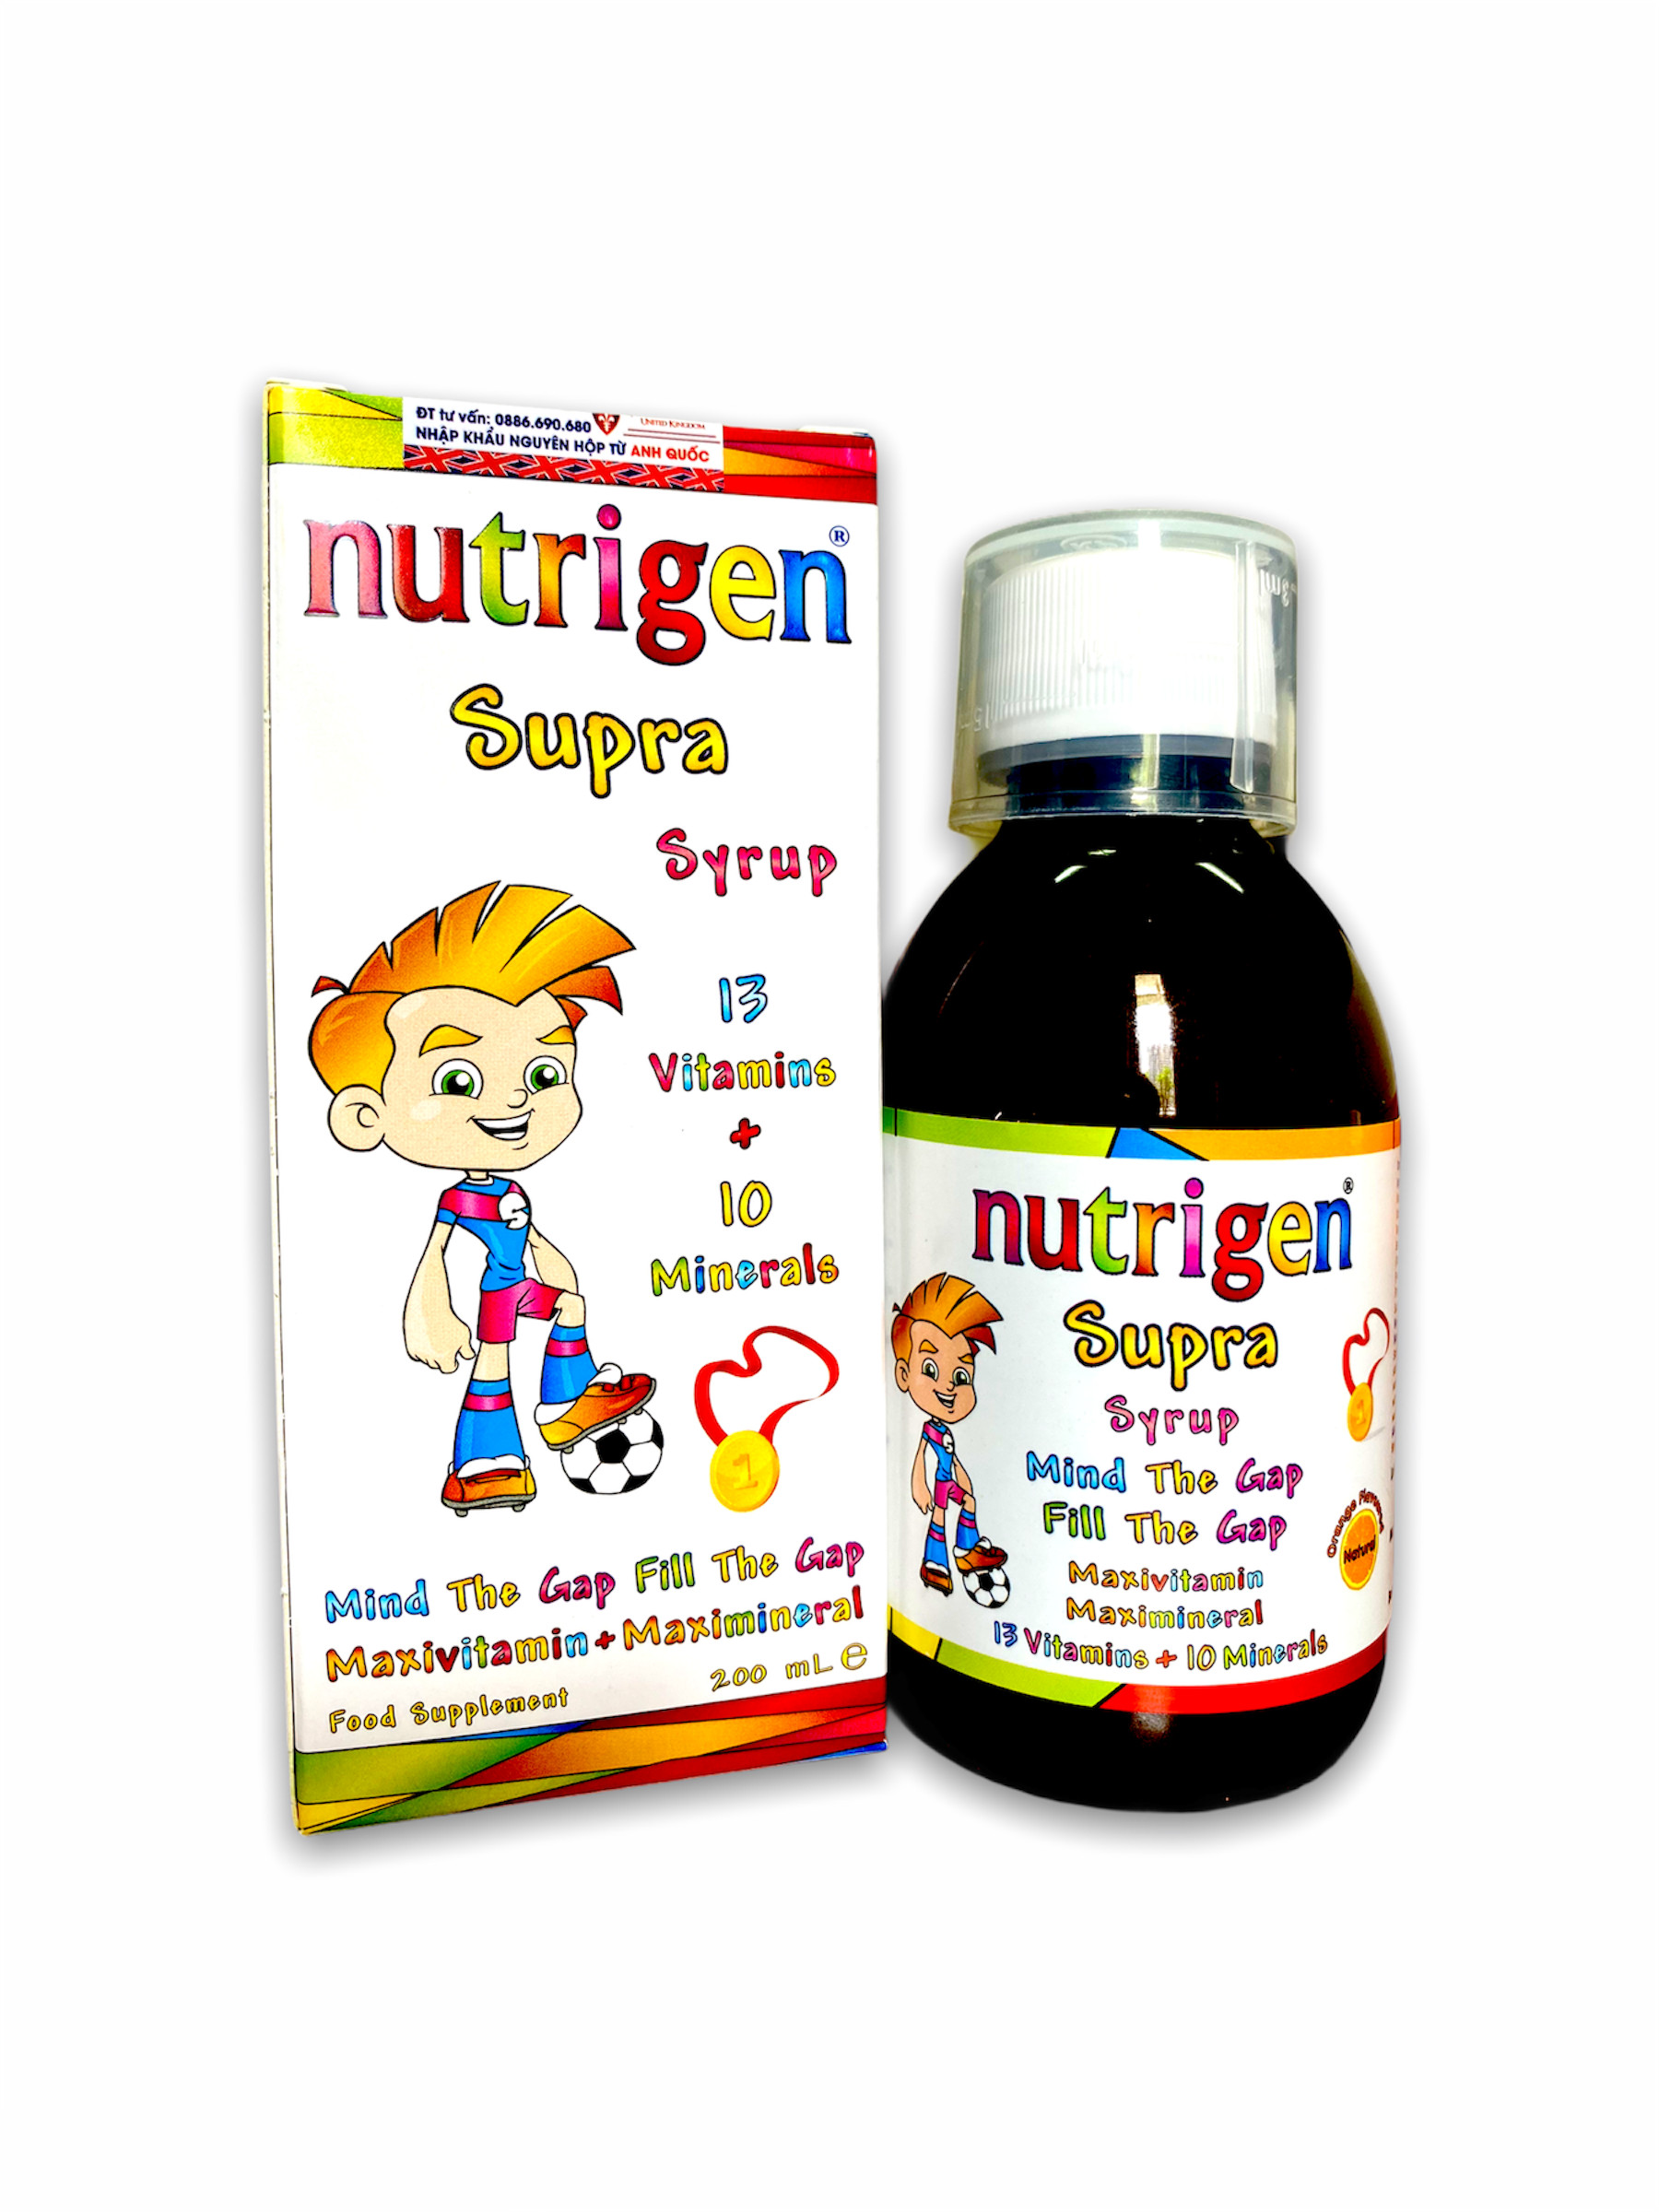 [MUA 1 TẶNG  1 XE ĐỒ CHƠI] KHI MUA 1 Nutrigen Supra Syrup - Siro Bổ Sung Dinh Dưỡng Và Vi Chất cho trẻ em